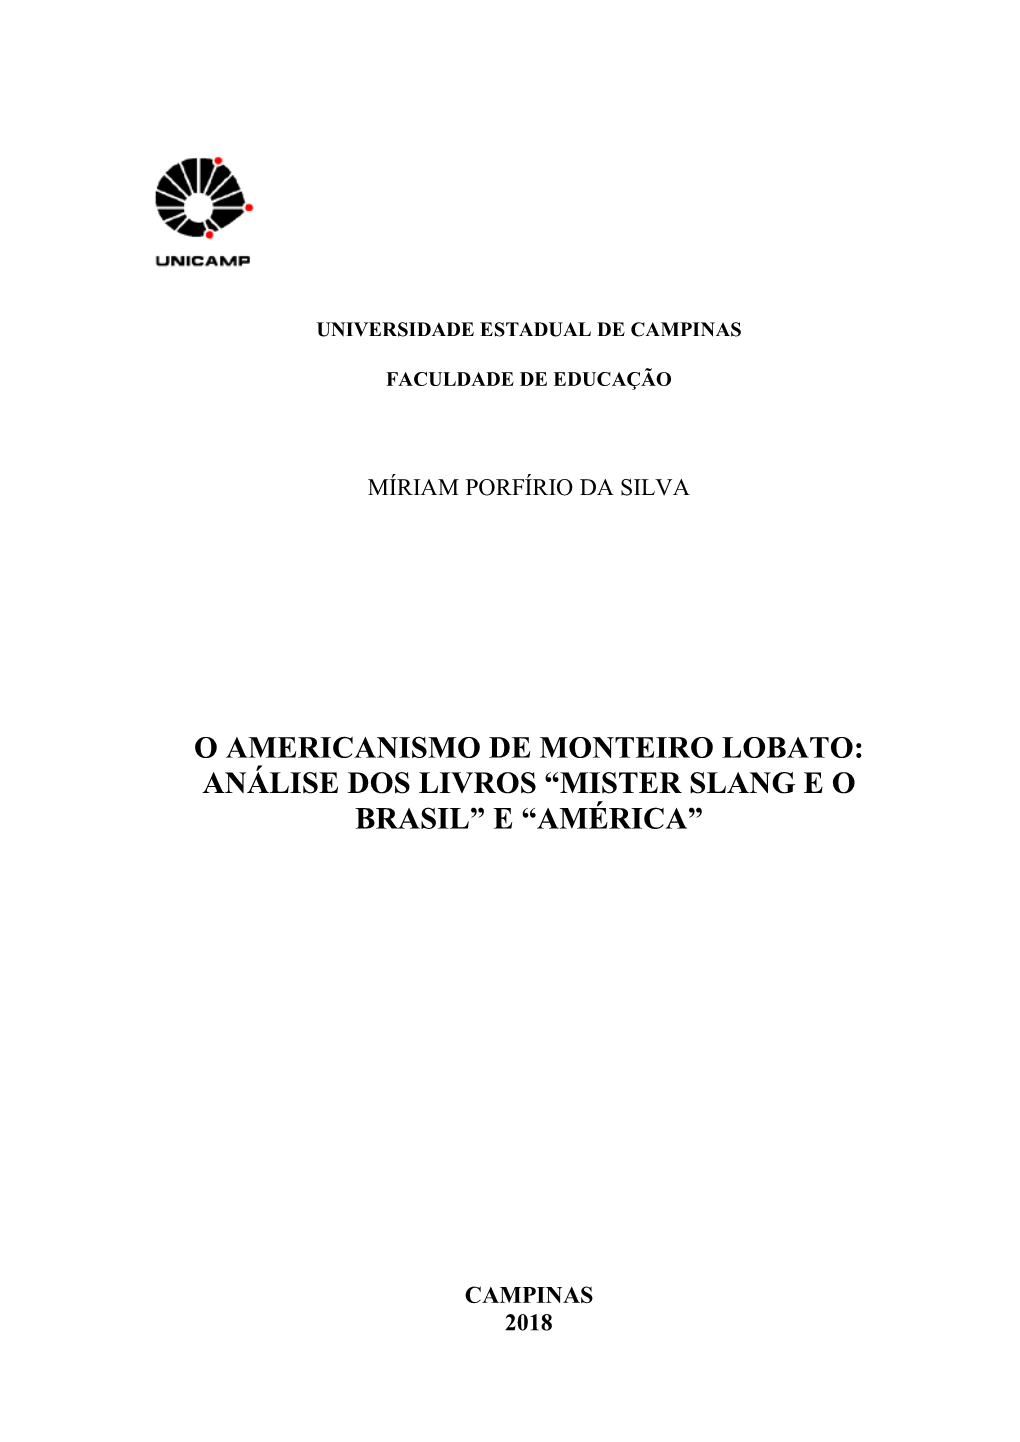 O Americanismo De Monteiro Lobato: Análise Dos Livros “Mister Slang E O Brasil” E “América”